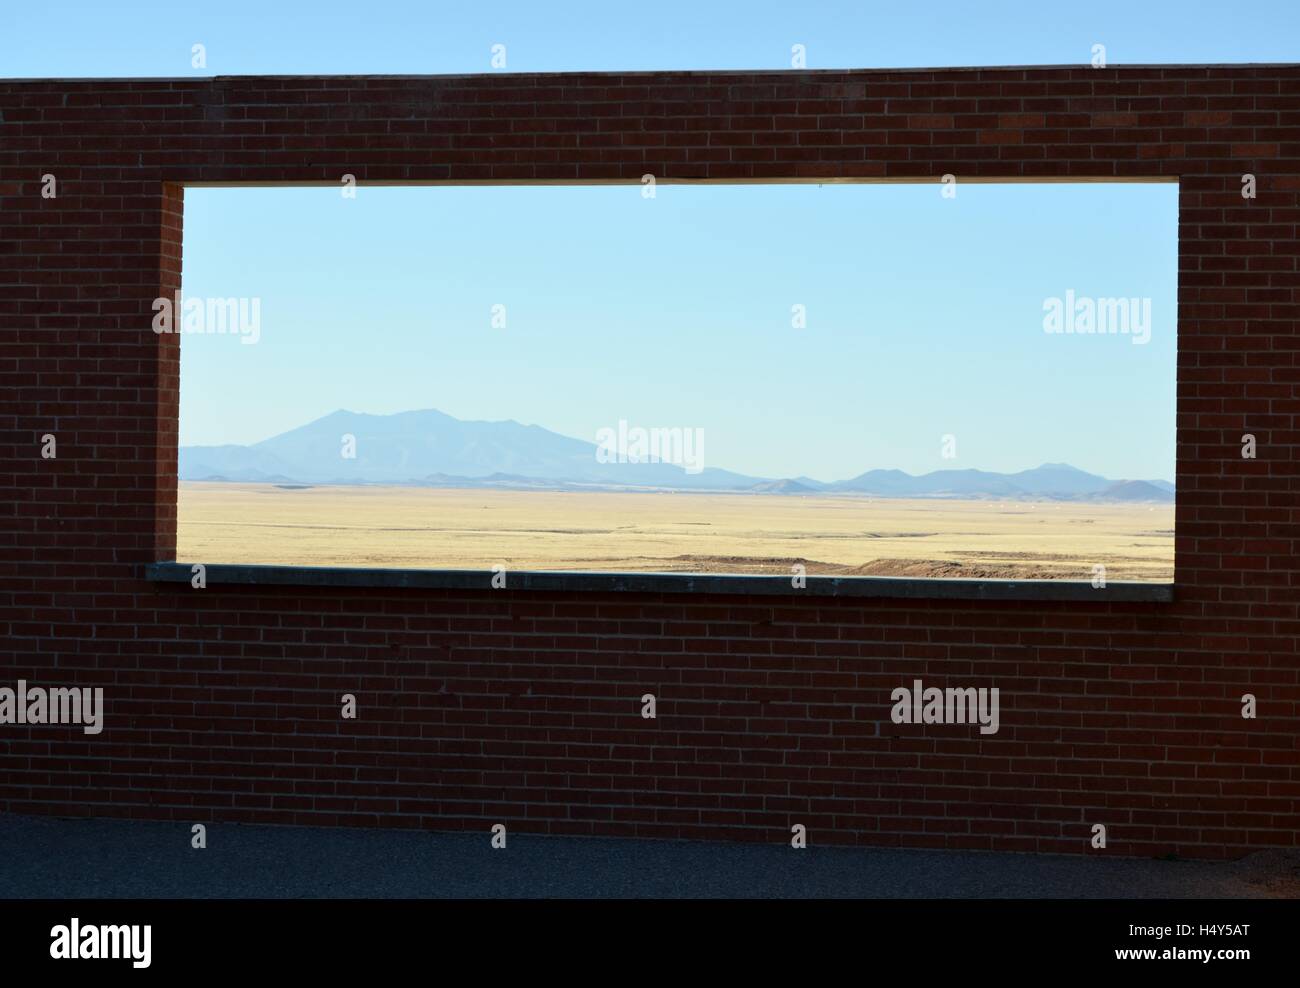 Fenêtre en brique, Meteor Crater, vue du sud-ouest de désert, montagnes à distance, arides, secs, chauds, Arizona, USA Banque D'Images